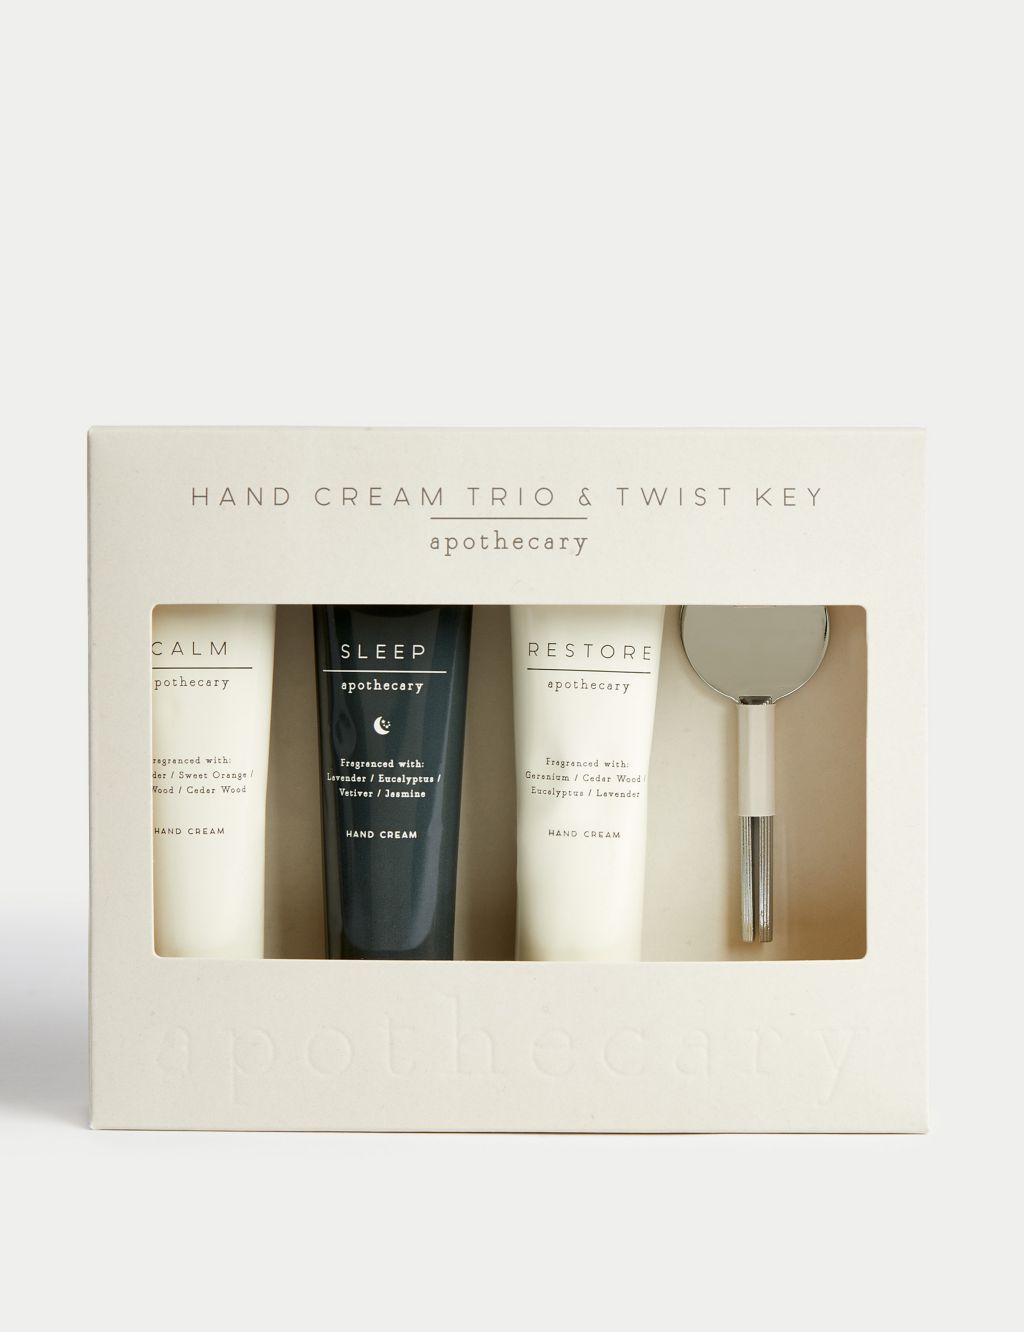 Hand Cream Gift Set